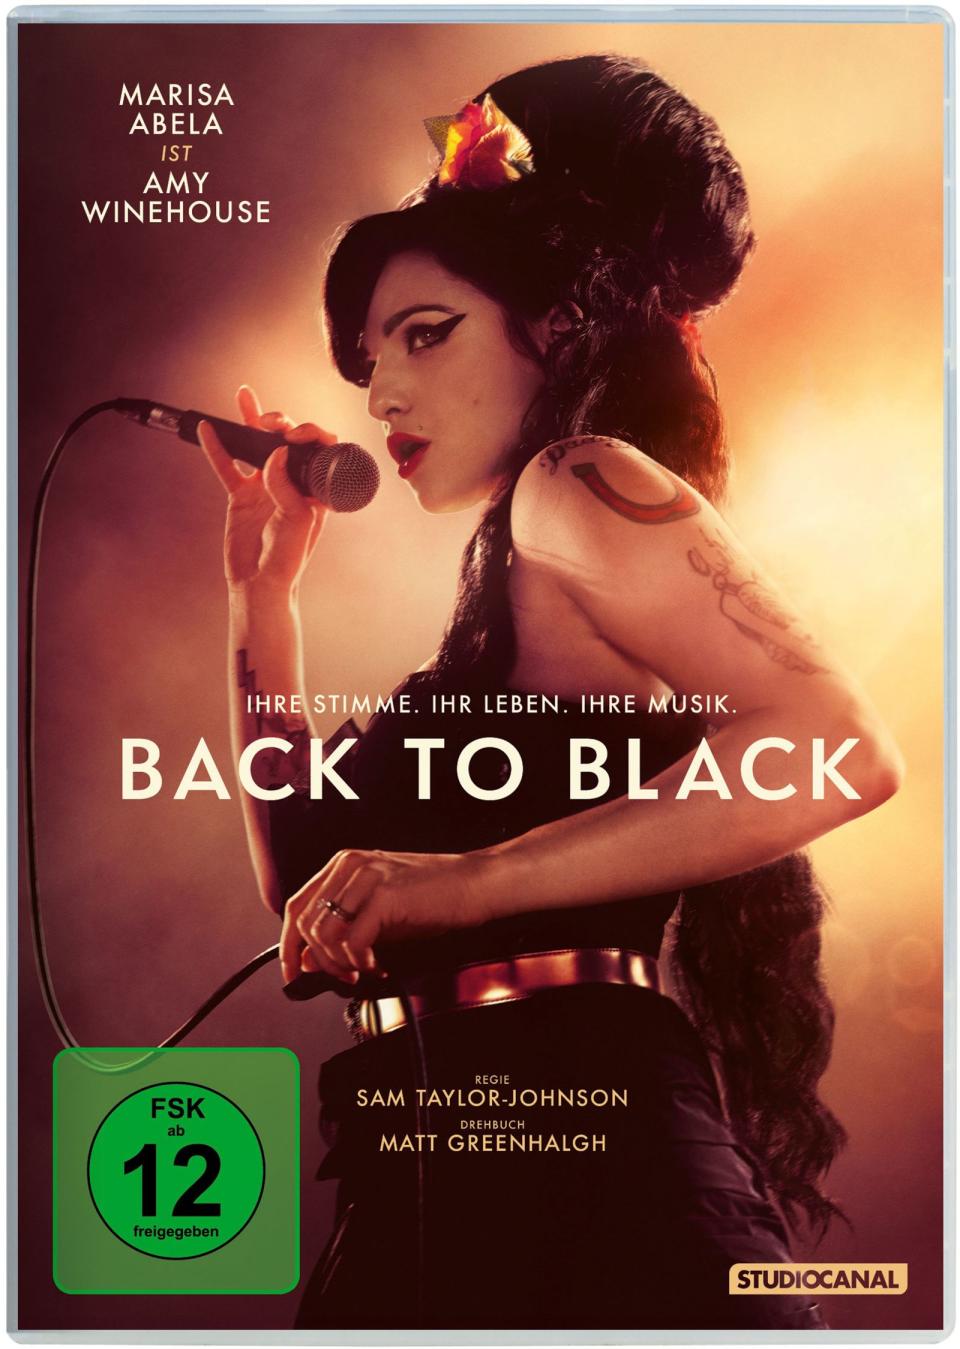 "Back to Black" will die Geschichte von Amy Winehouse aus einem neuen Blickwinkel erzählen. (Bild: Studiocanal)